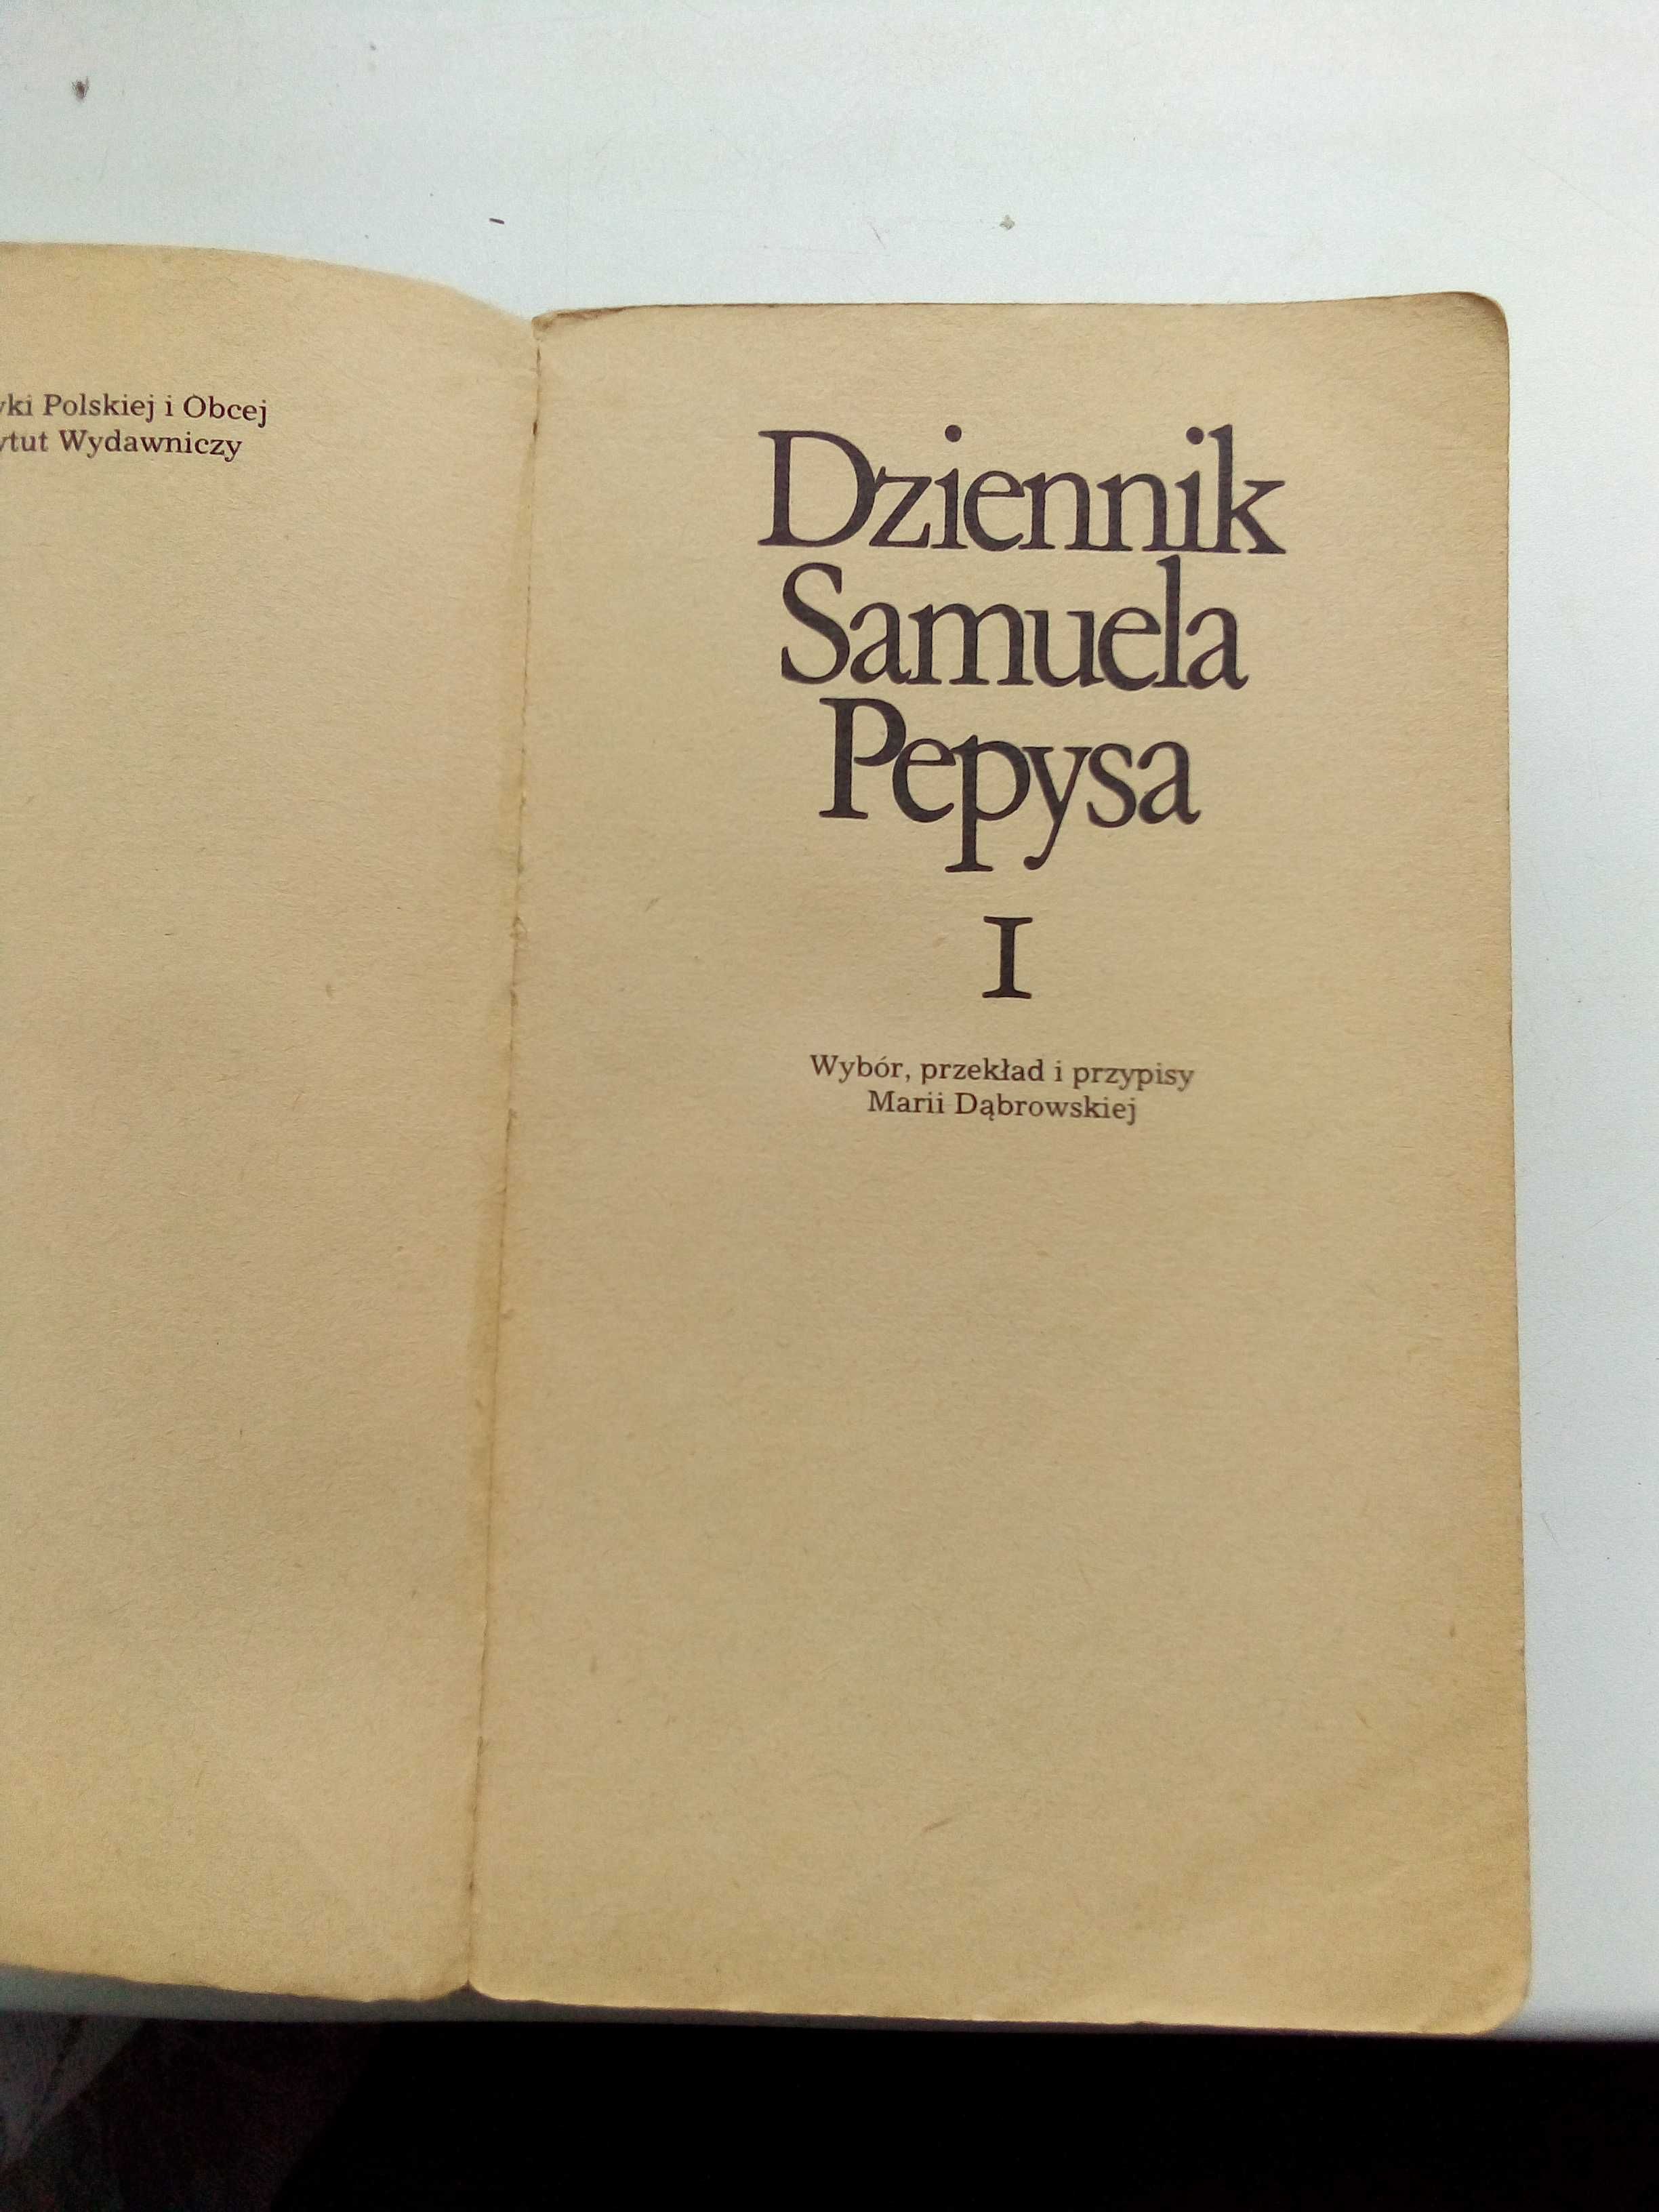 Дневник Самюэля Пеписа 2 тома на польском языке